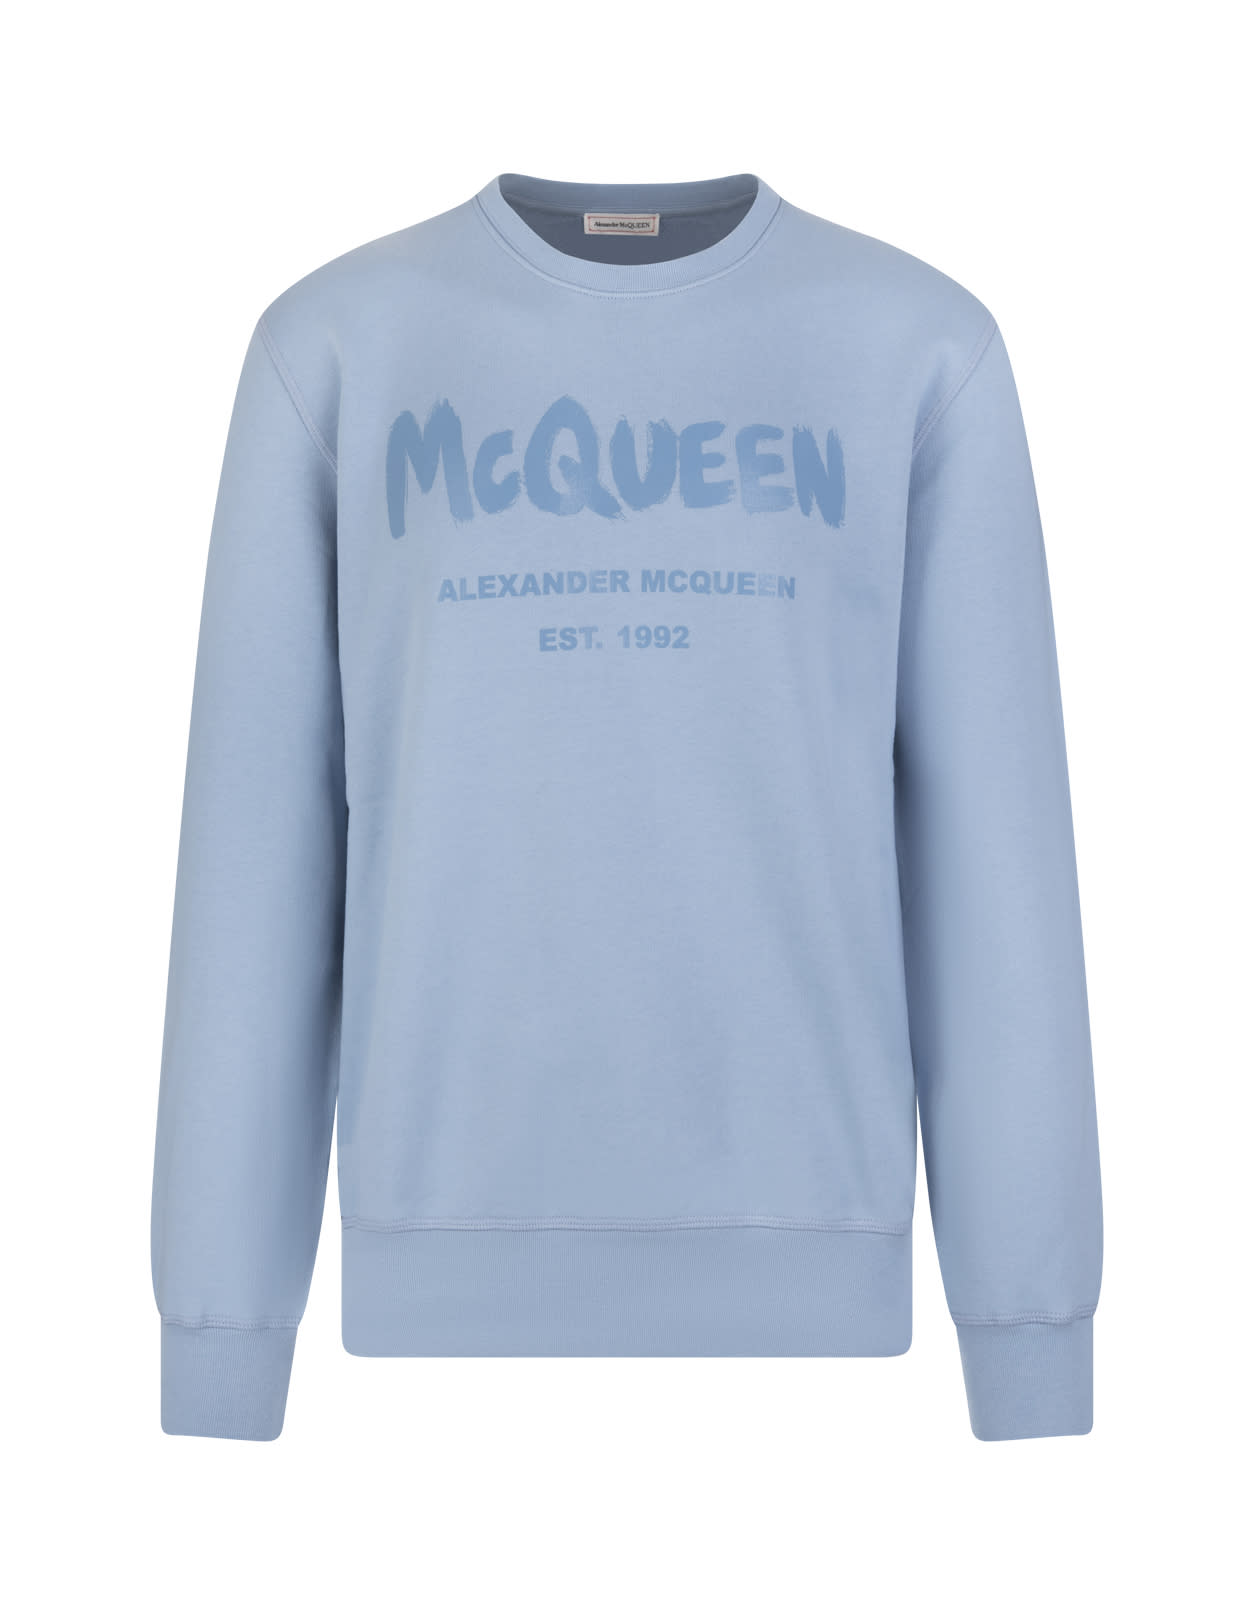 Alexander McQueen Man Light Blue Mcqueen Graffiti Crew Neck Sweatshirt